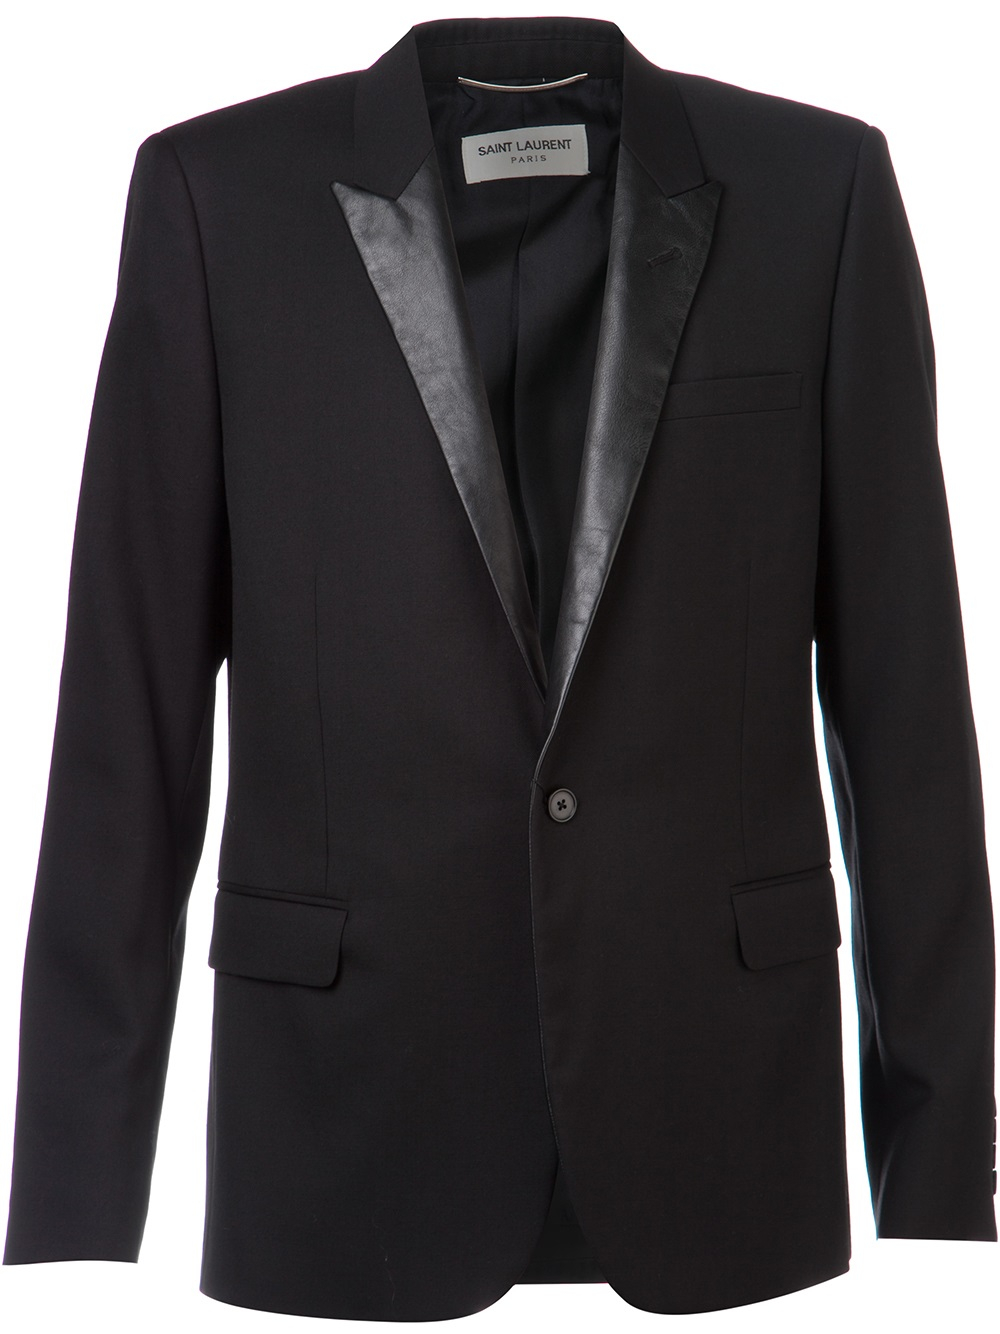 Saint laurent Leather Lapel Jacket in Black for Men | Lyst